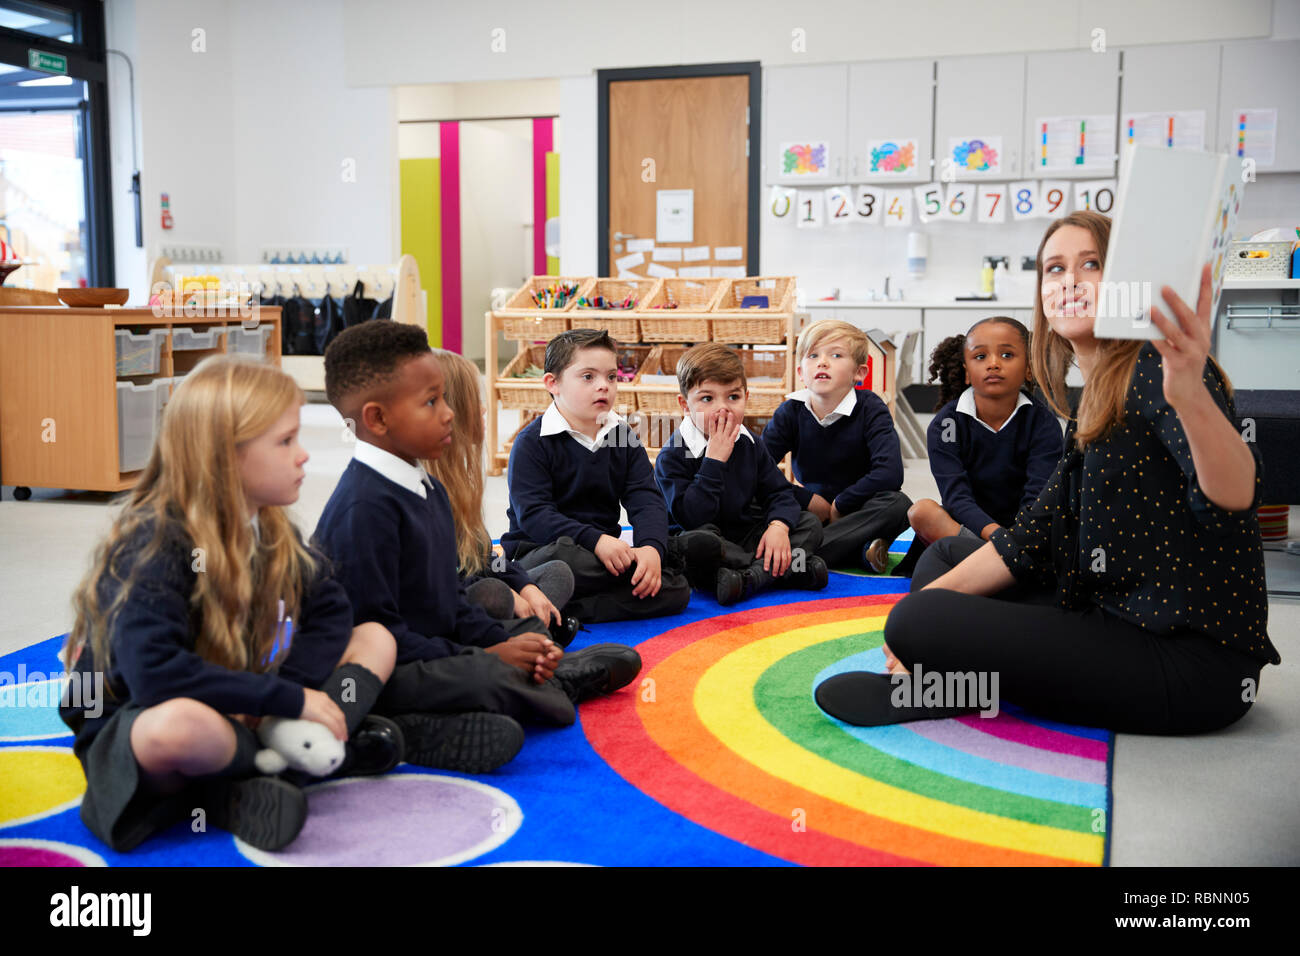 Lehrerin hält ein Buch vor ihrer Klasse der Grundschule Kinder sitzen auf dem Boden in einem Klassenzimmer, Seitenansicht Stockfoto